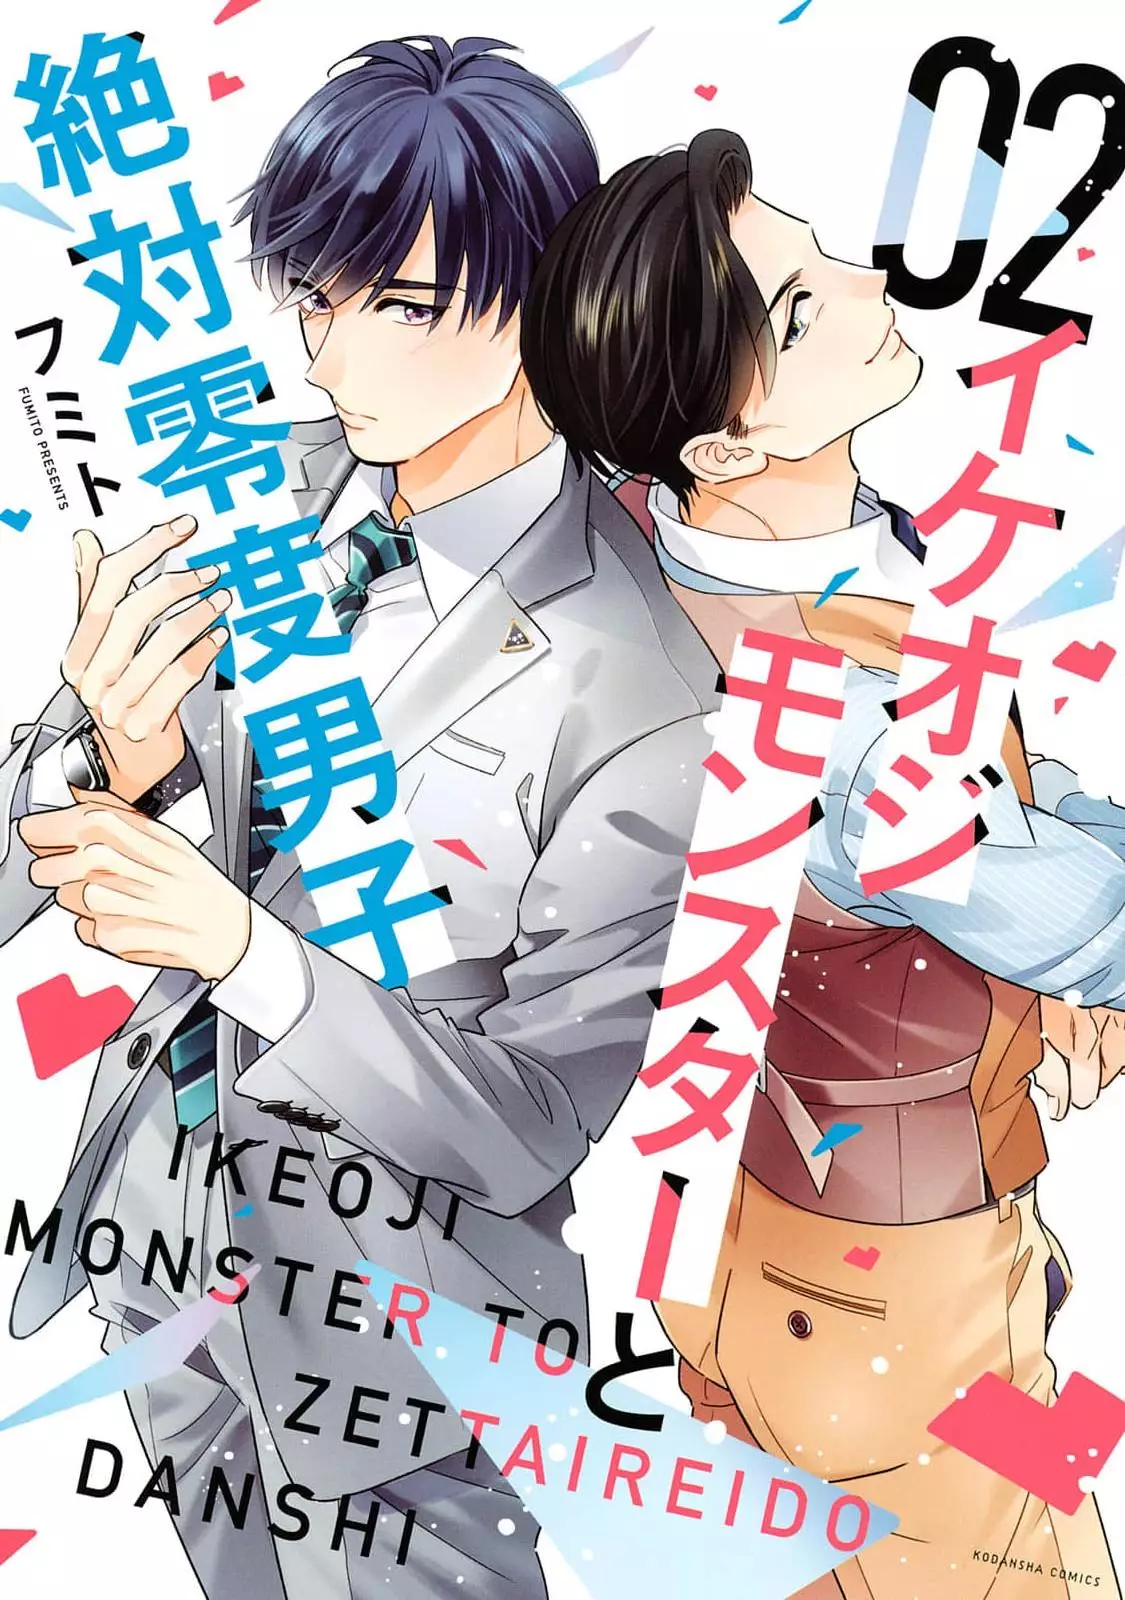 Ikeoji Monster To Zettai Reido Danshi - 7 page 1-9e7329e5